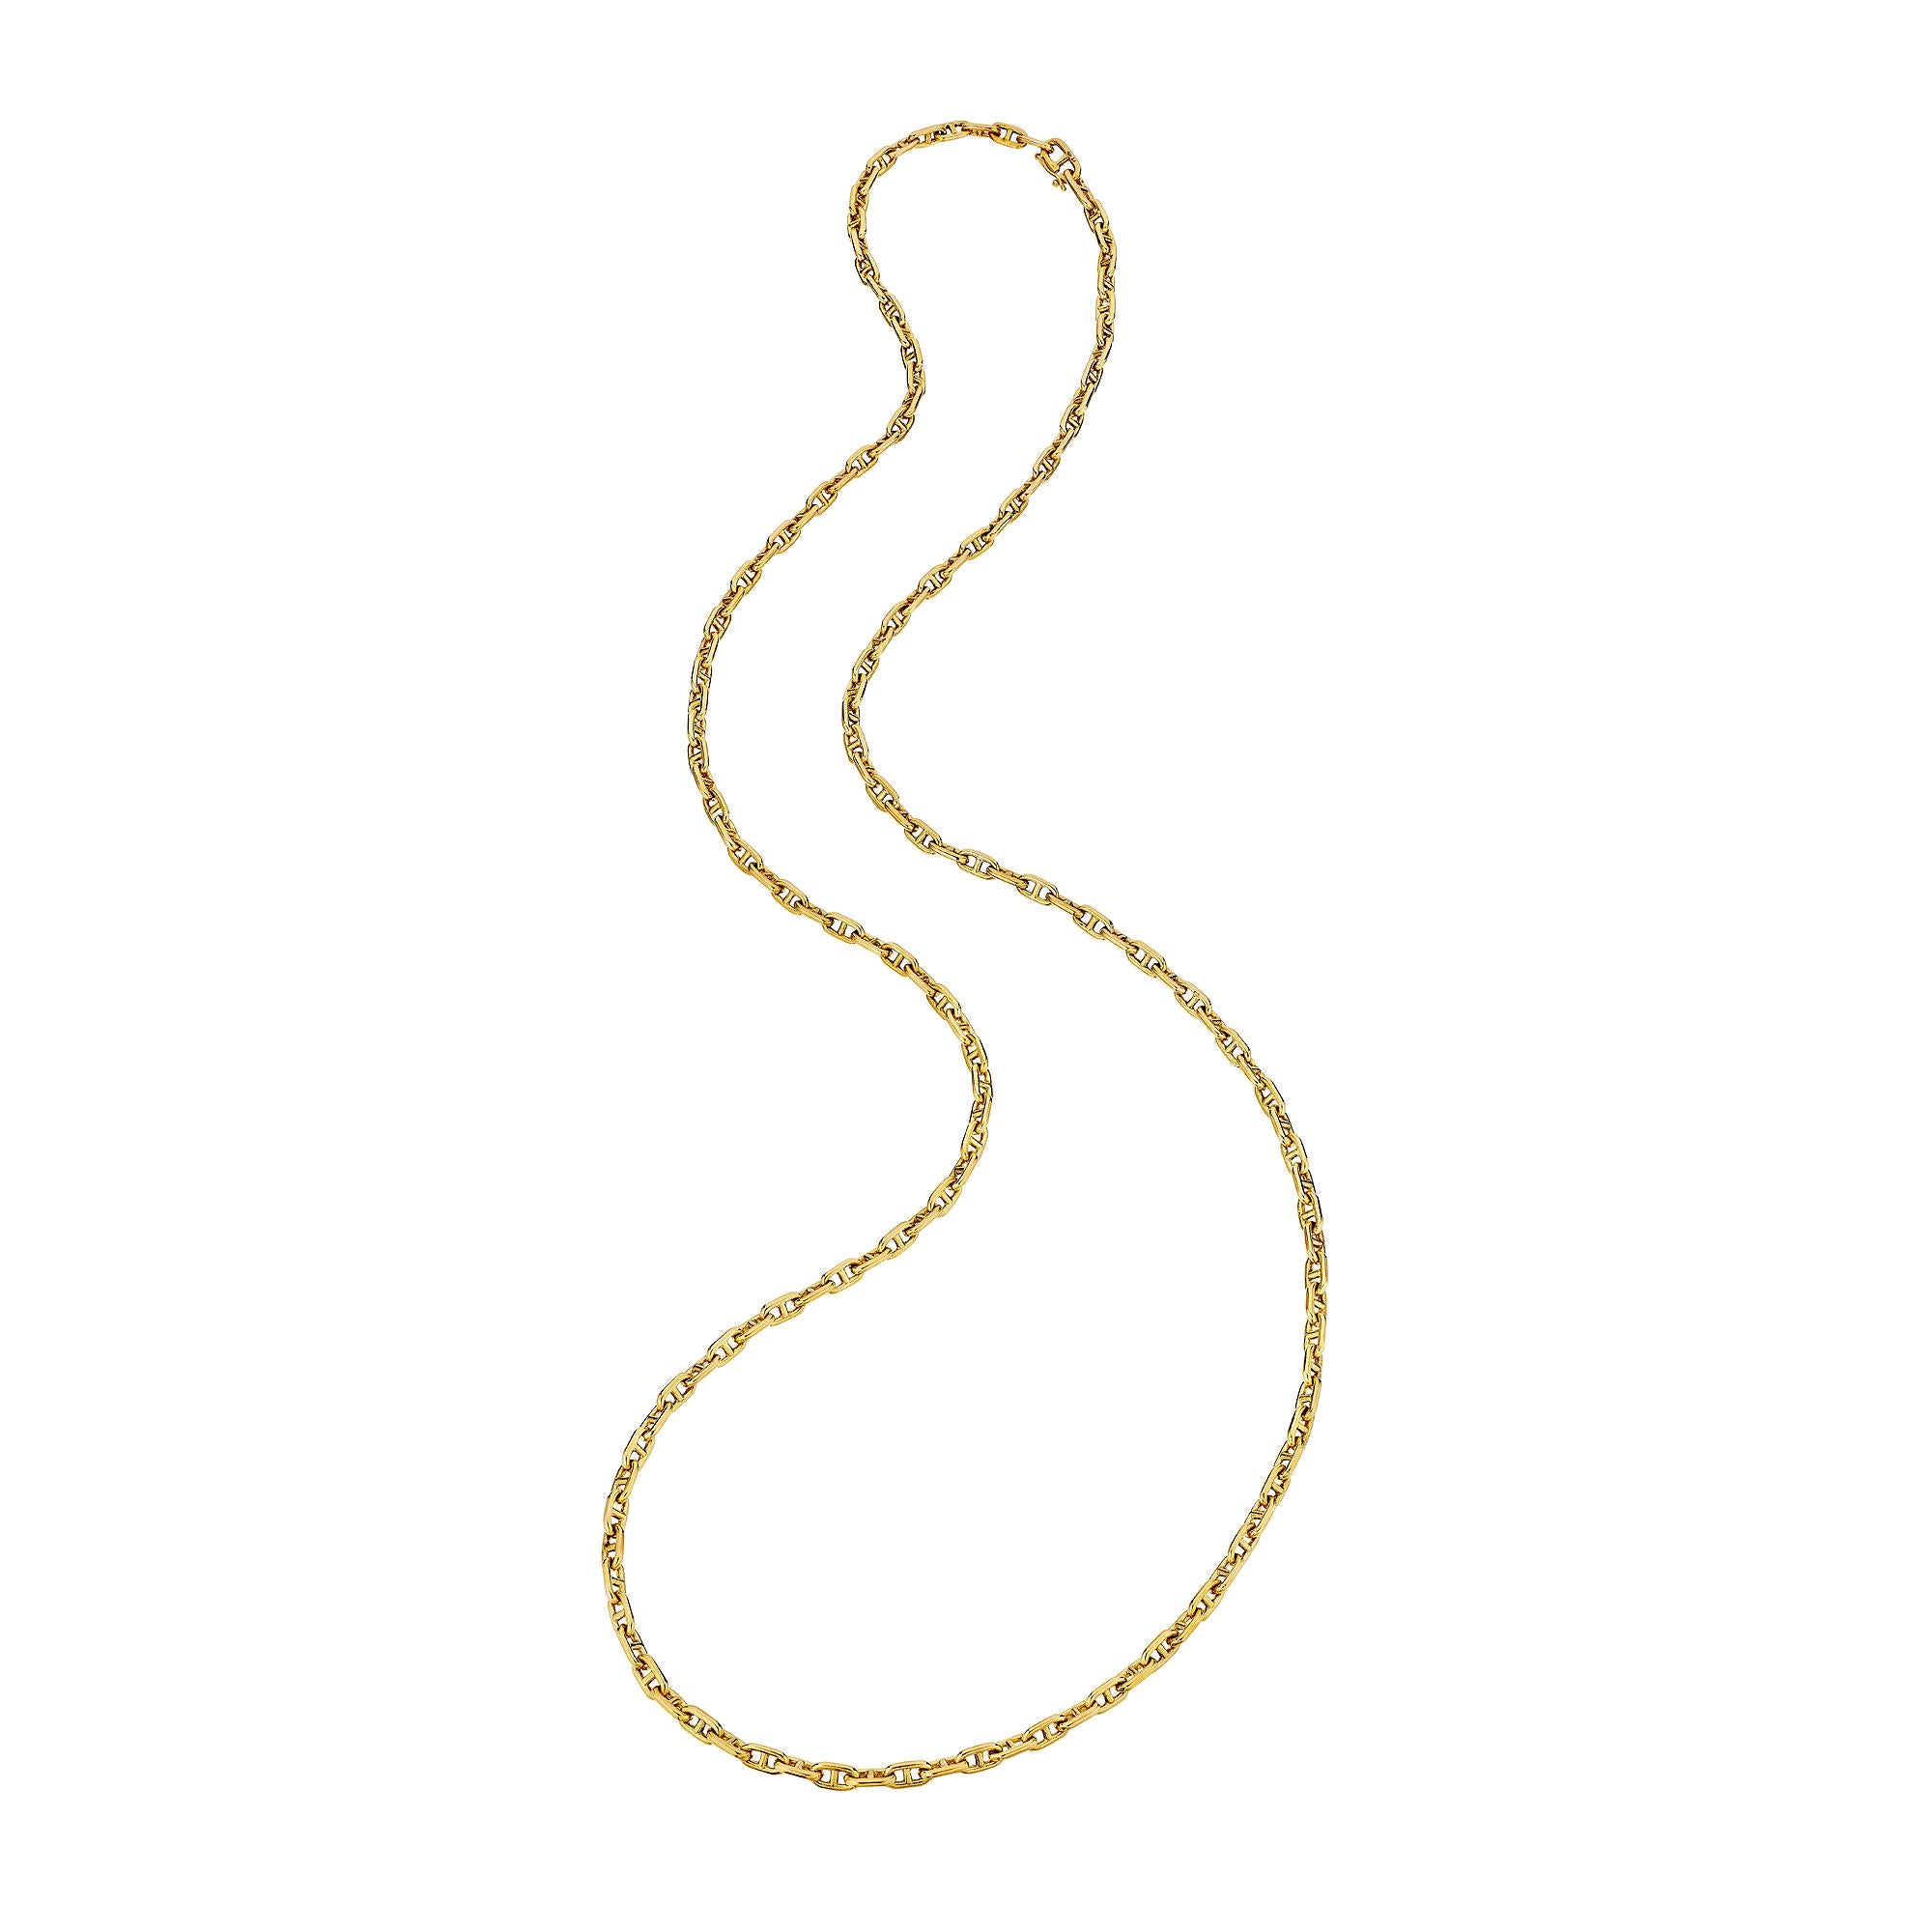 Lassen Sie sich in kostbarem Gold einkreisen mit diesem kultigen Hermes Paris  Kette 'chain d'ancre' mit langem, kleinem Glied, modernistische Halskette.  Signiert Hermes mit französischen Punzen.  Tragen Sie es lang oder doppelt gewickelt, aber so